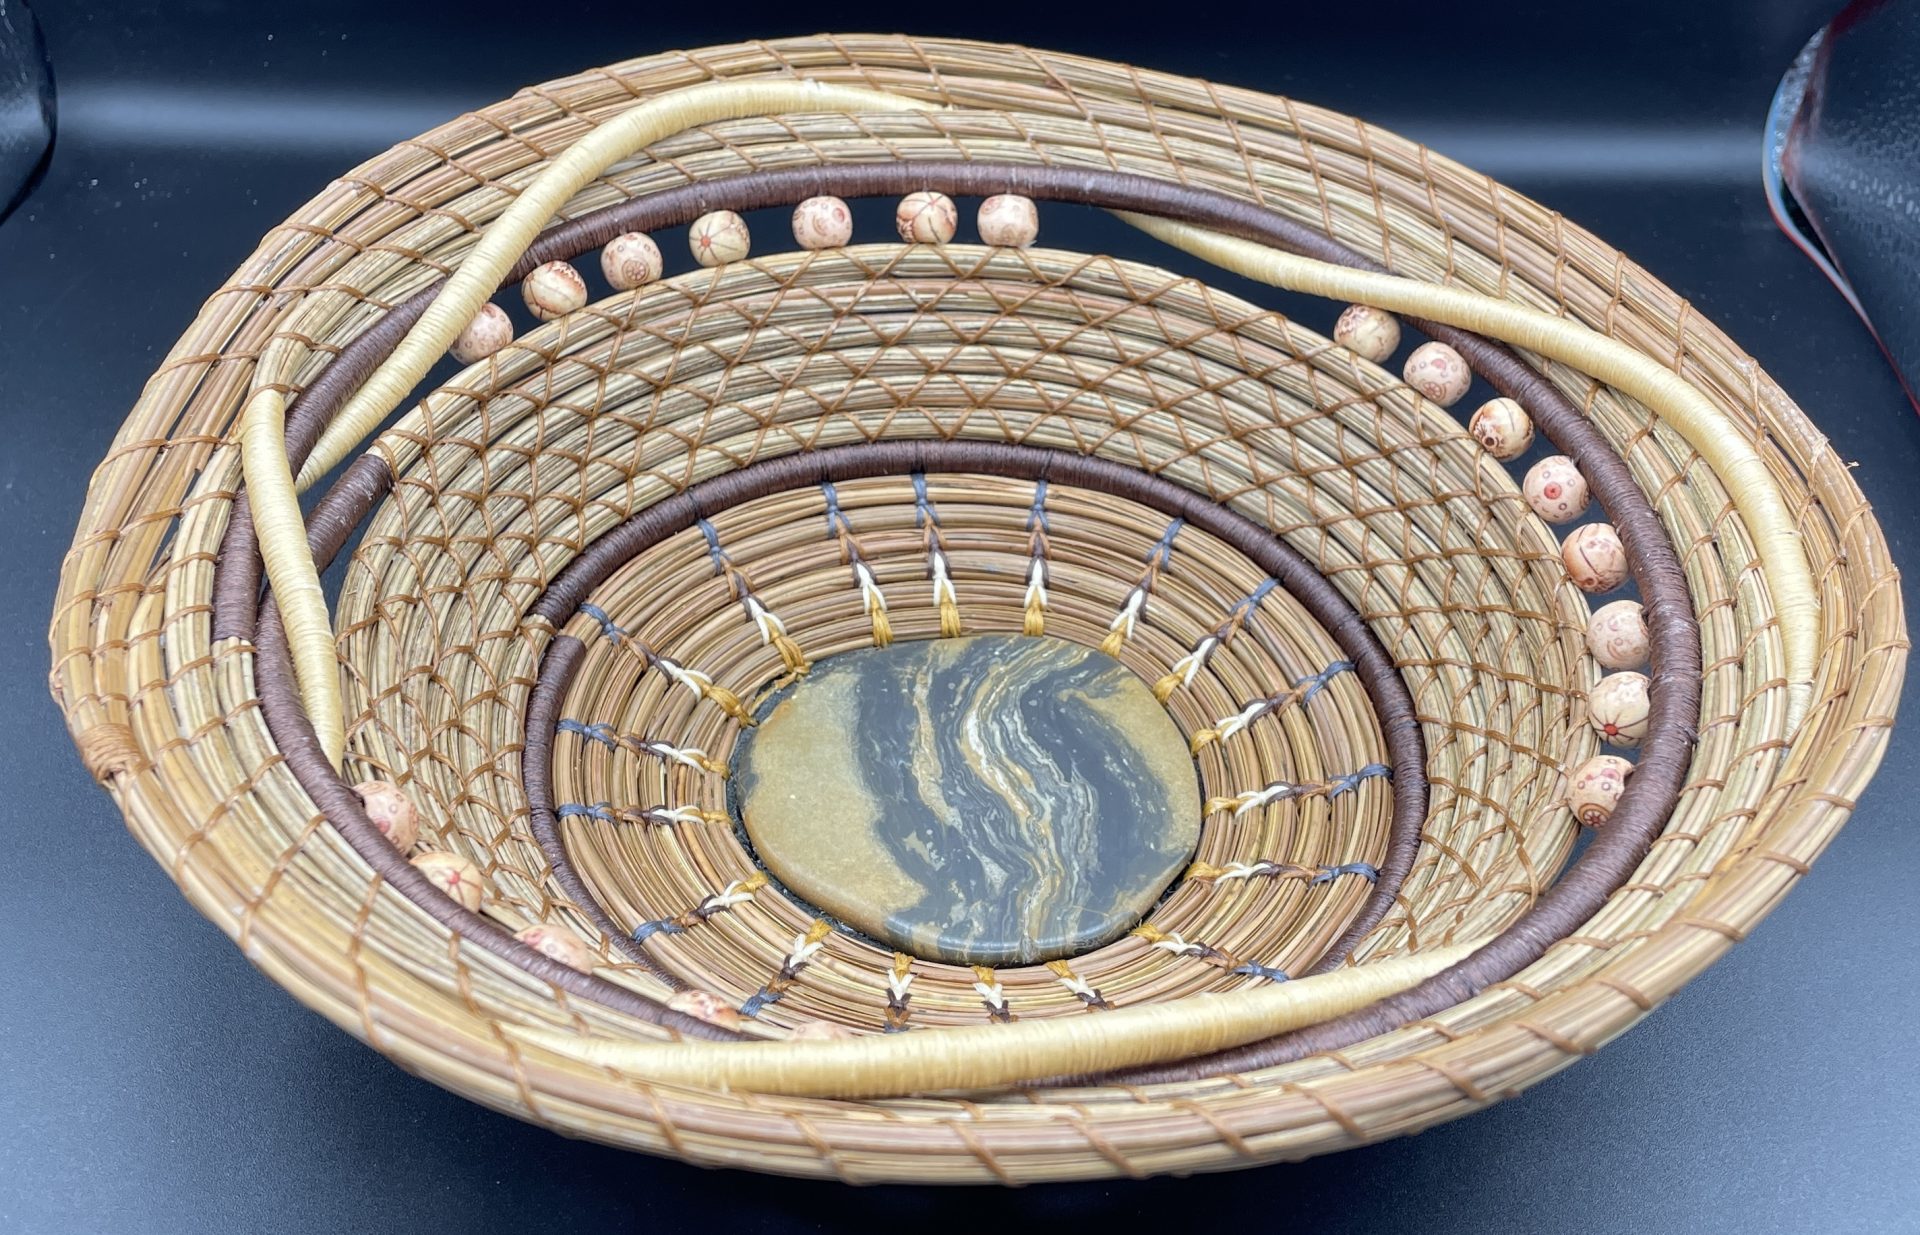 Intertwined pine needle basket